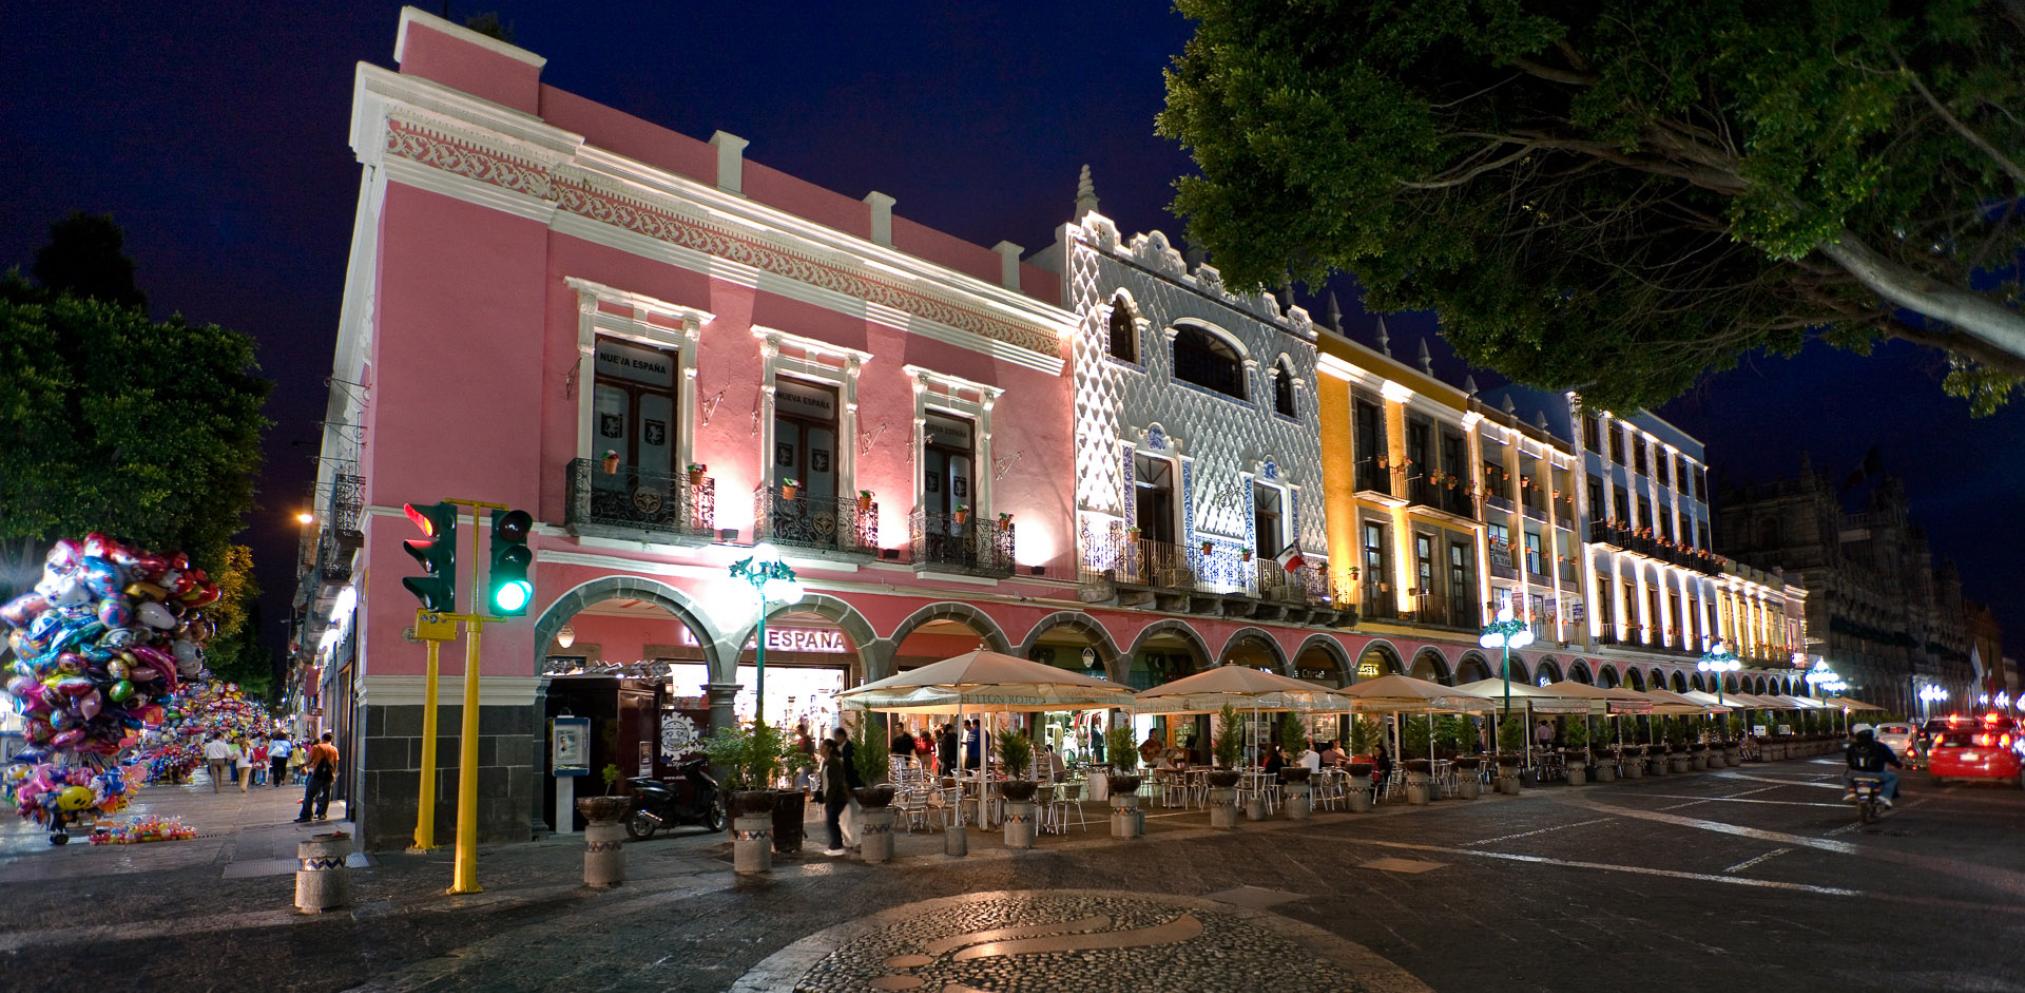 La ciudad de Puebla